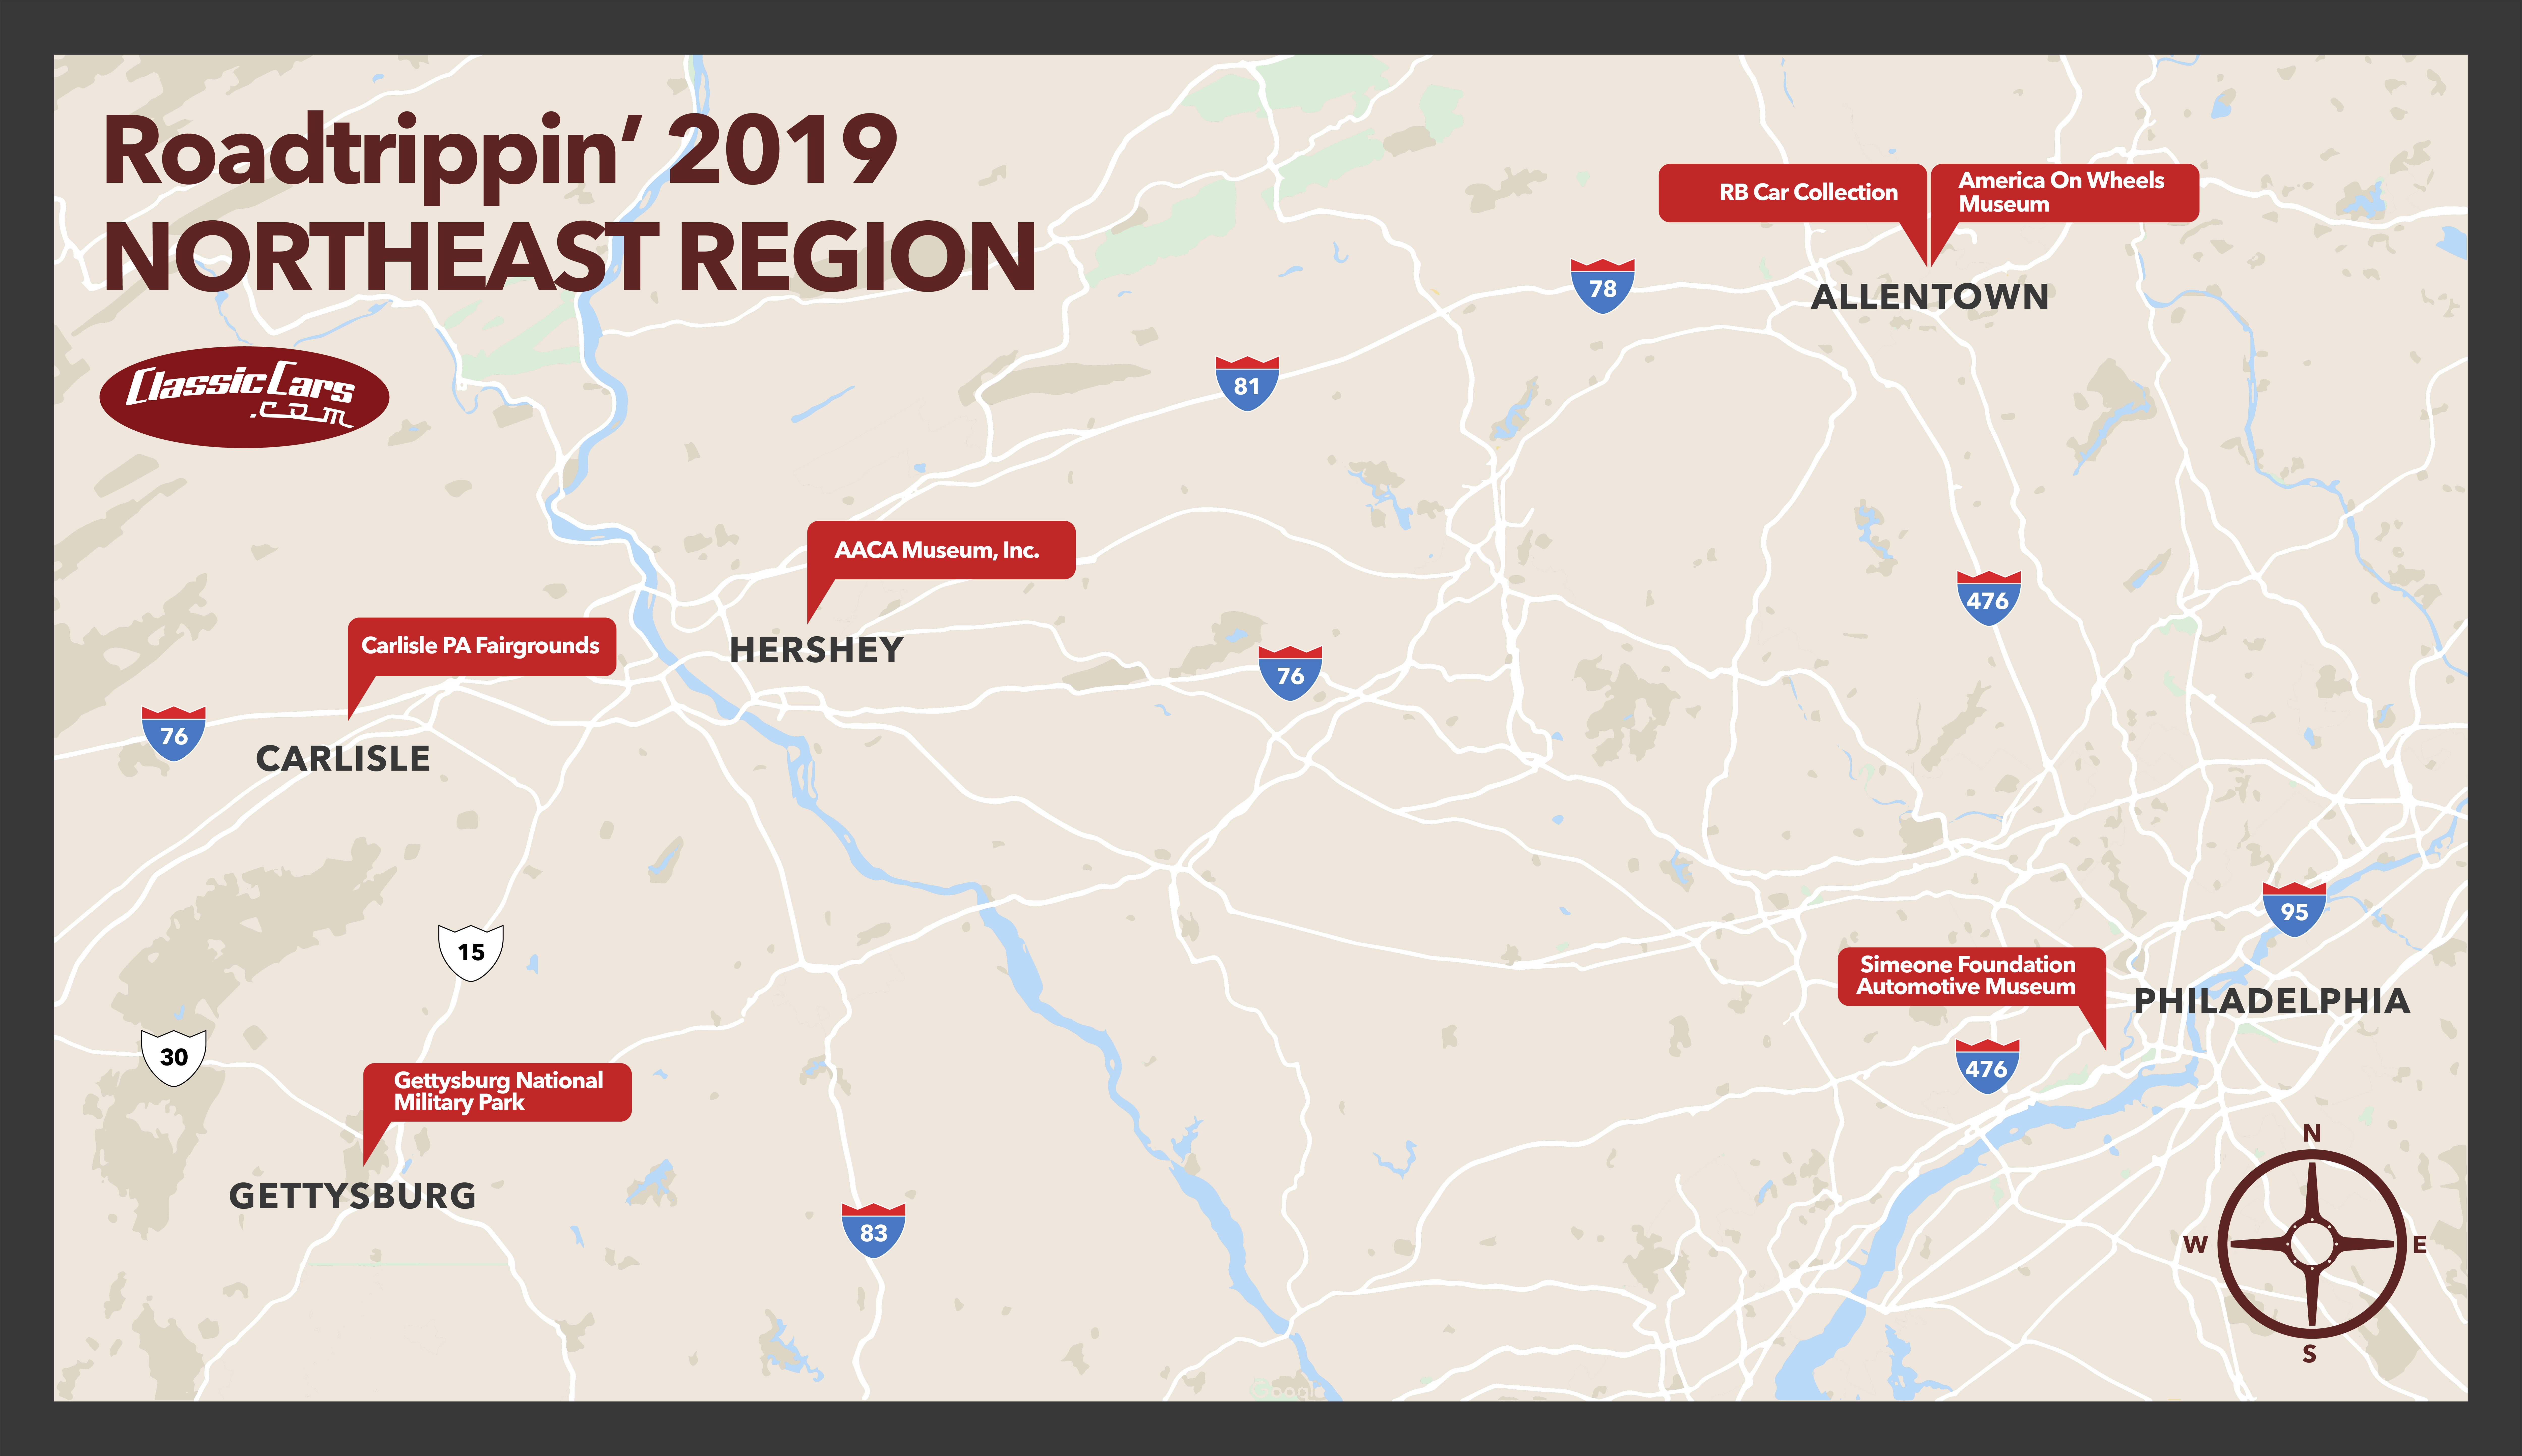 Roadtrippin', Roadtrippin’ 2019: Carlisle Events, ClassicCars.com Journal